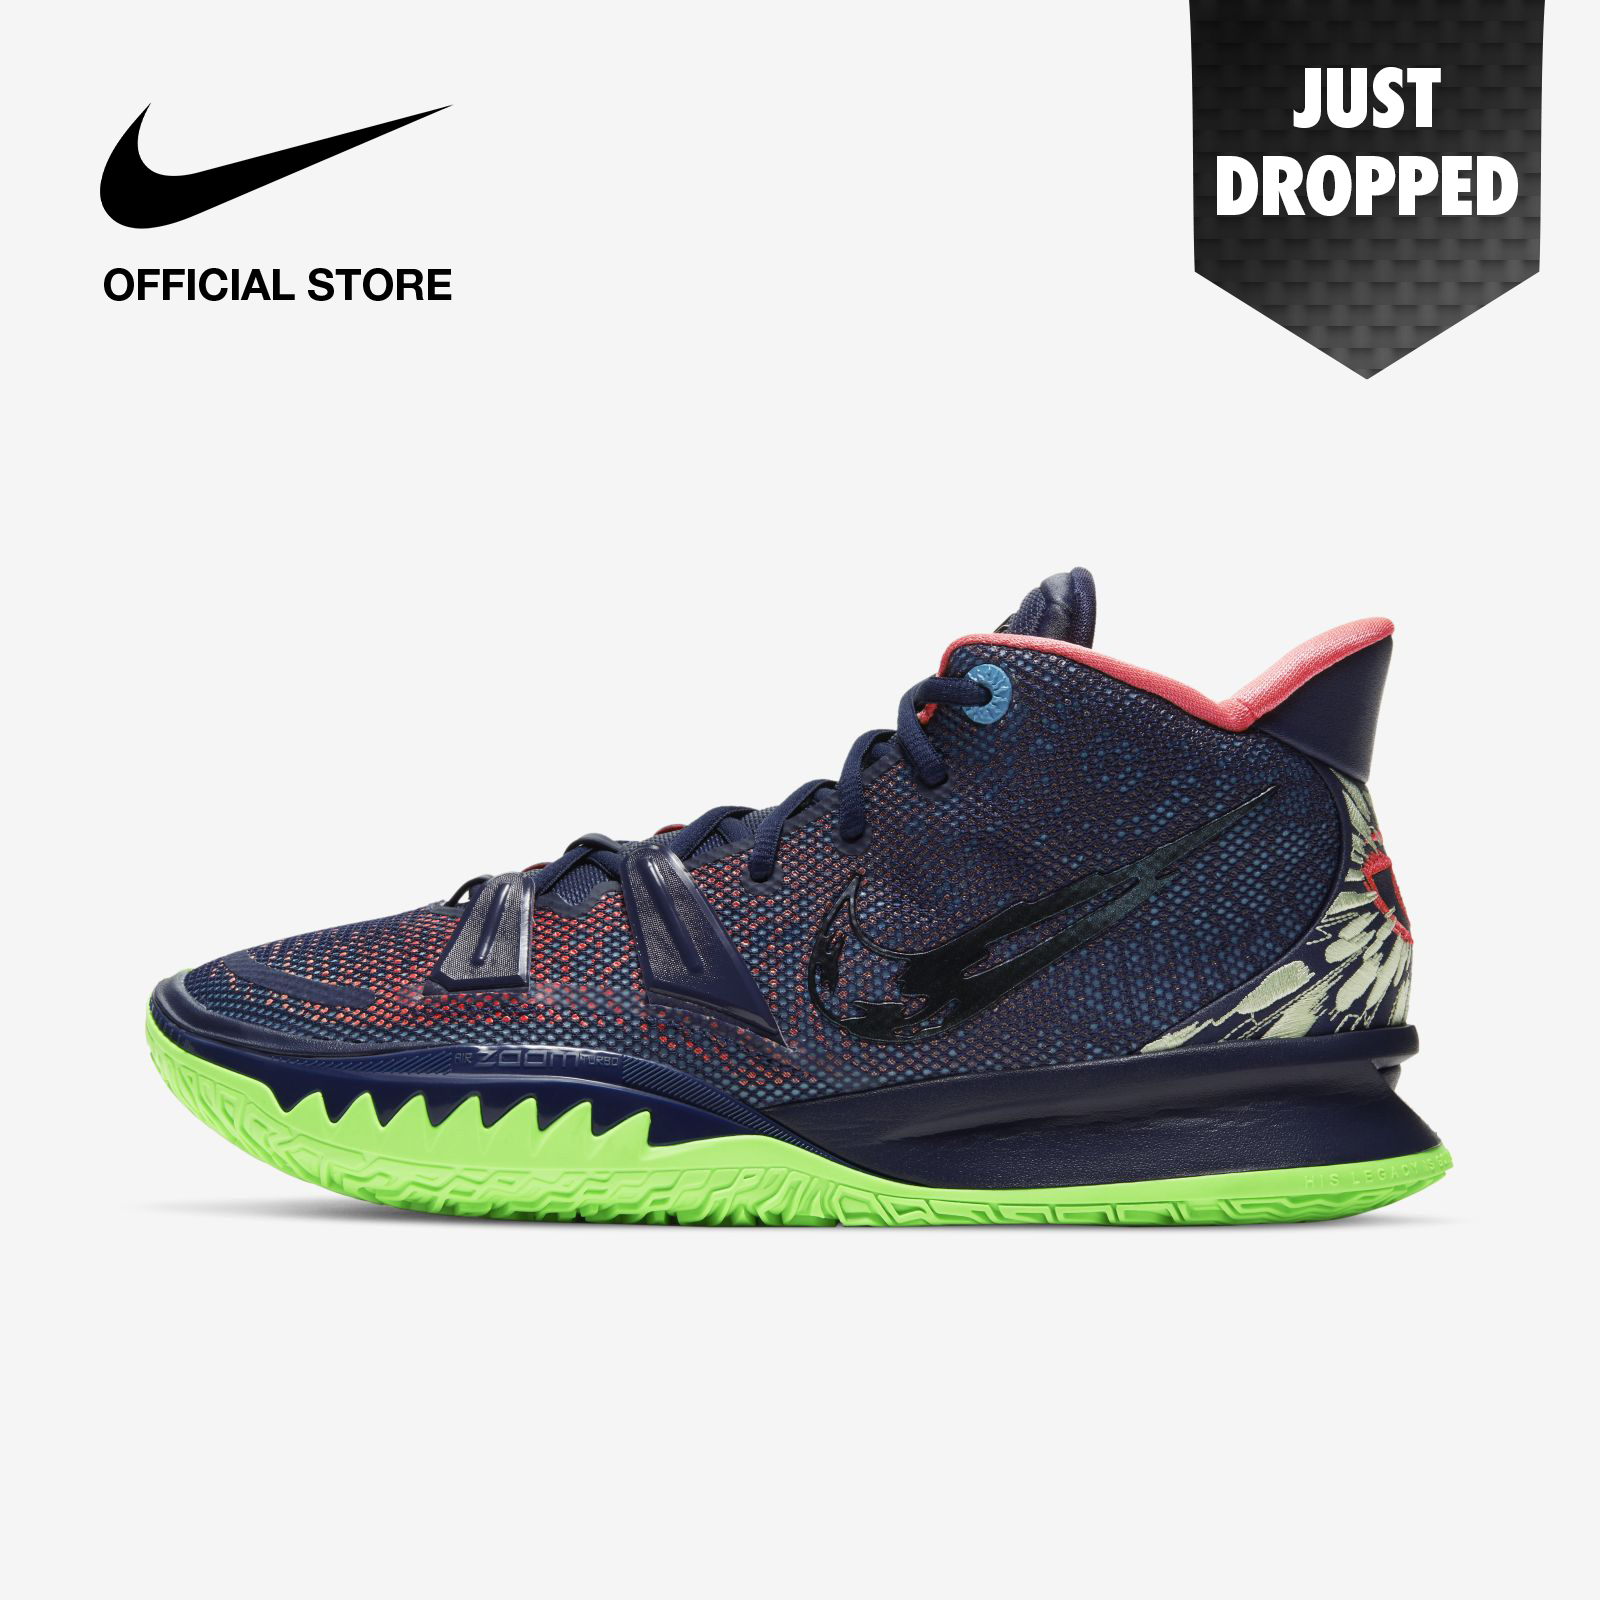 Nike Men's Kyrie 7 EP Basketball Shoes - Midnight Navy ไนกี้ รองเท้าบาสเก็ตบอลผู้ชาย ไครี่ 7 อีพี - สีฟ้า